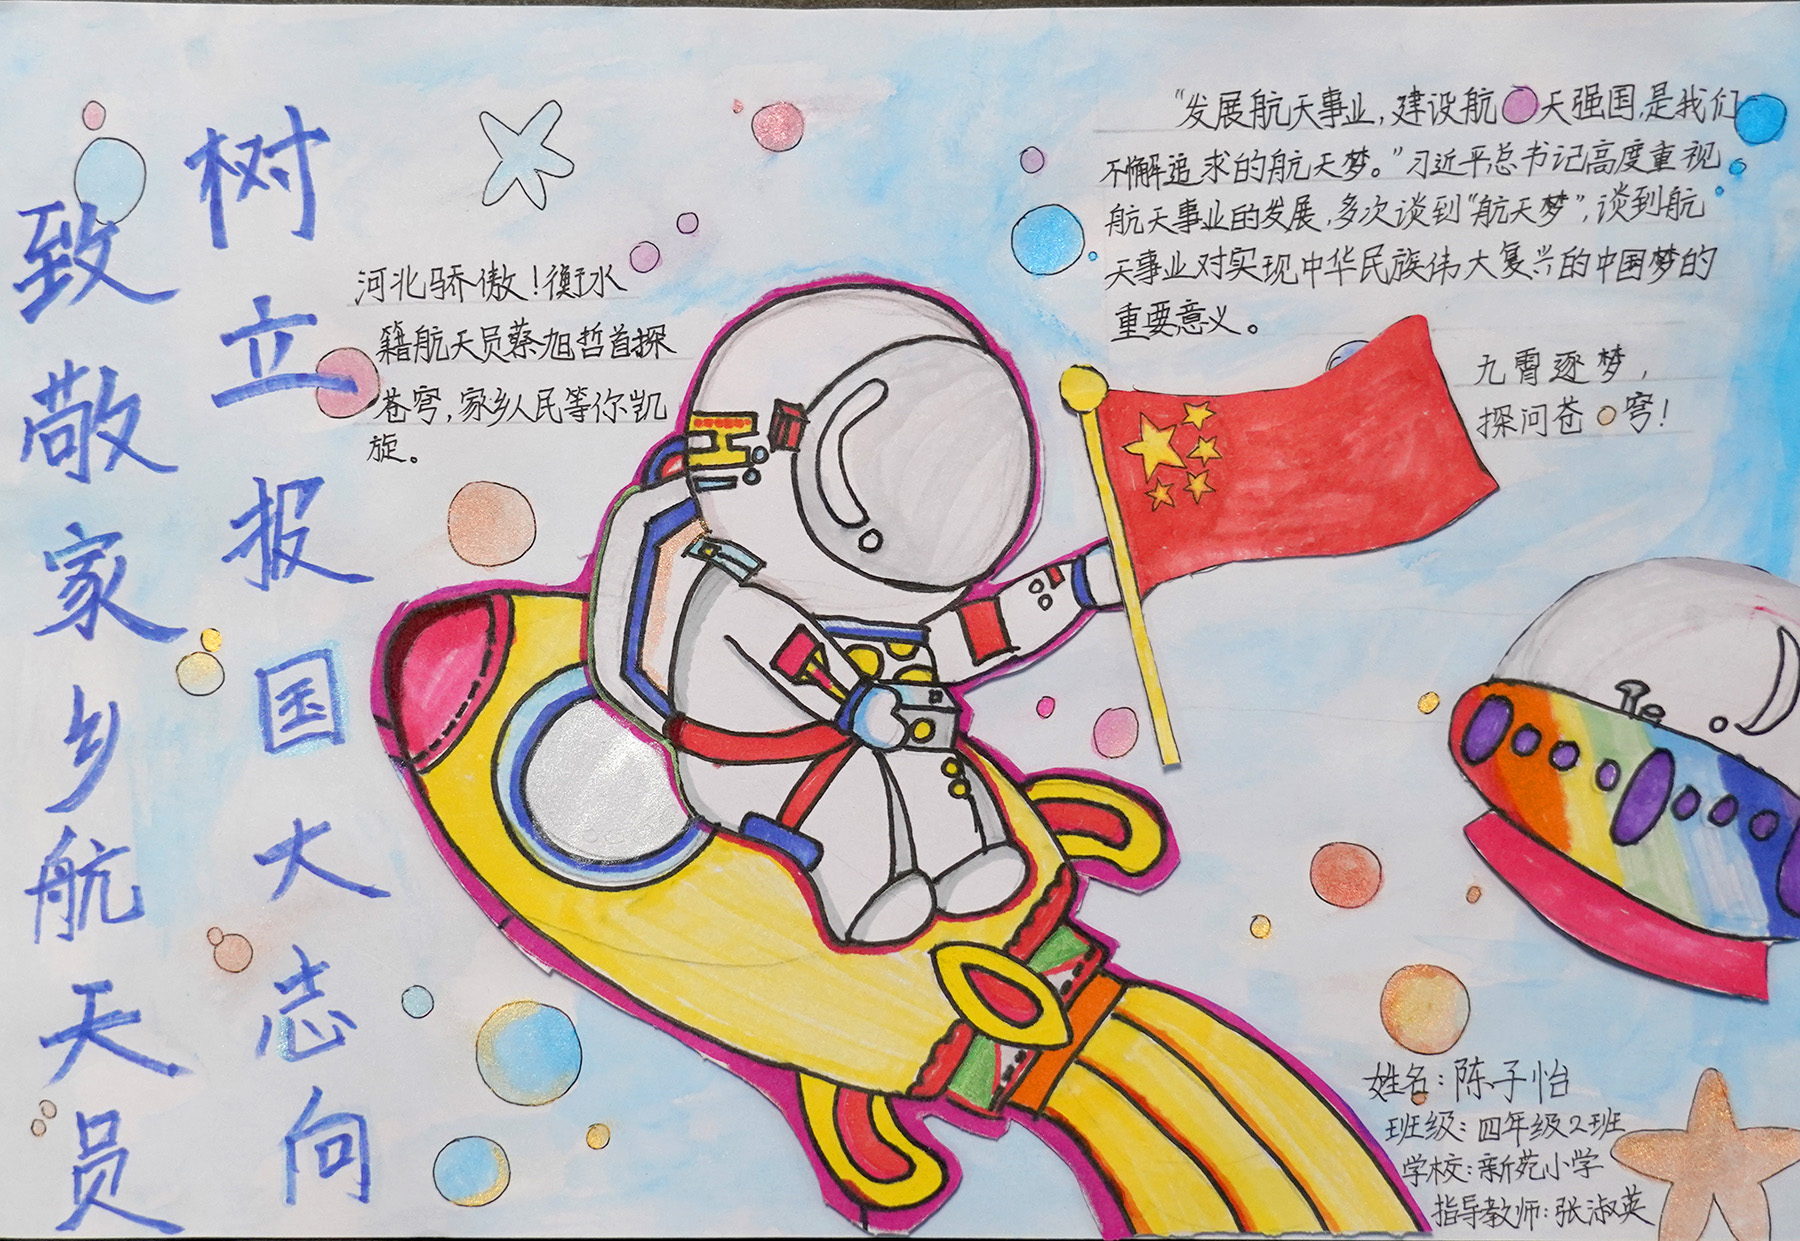 中国航天事业小报图片